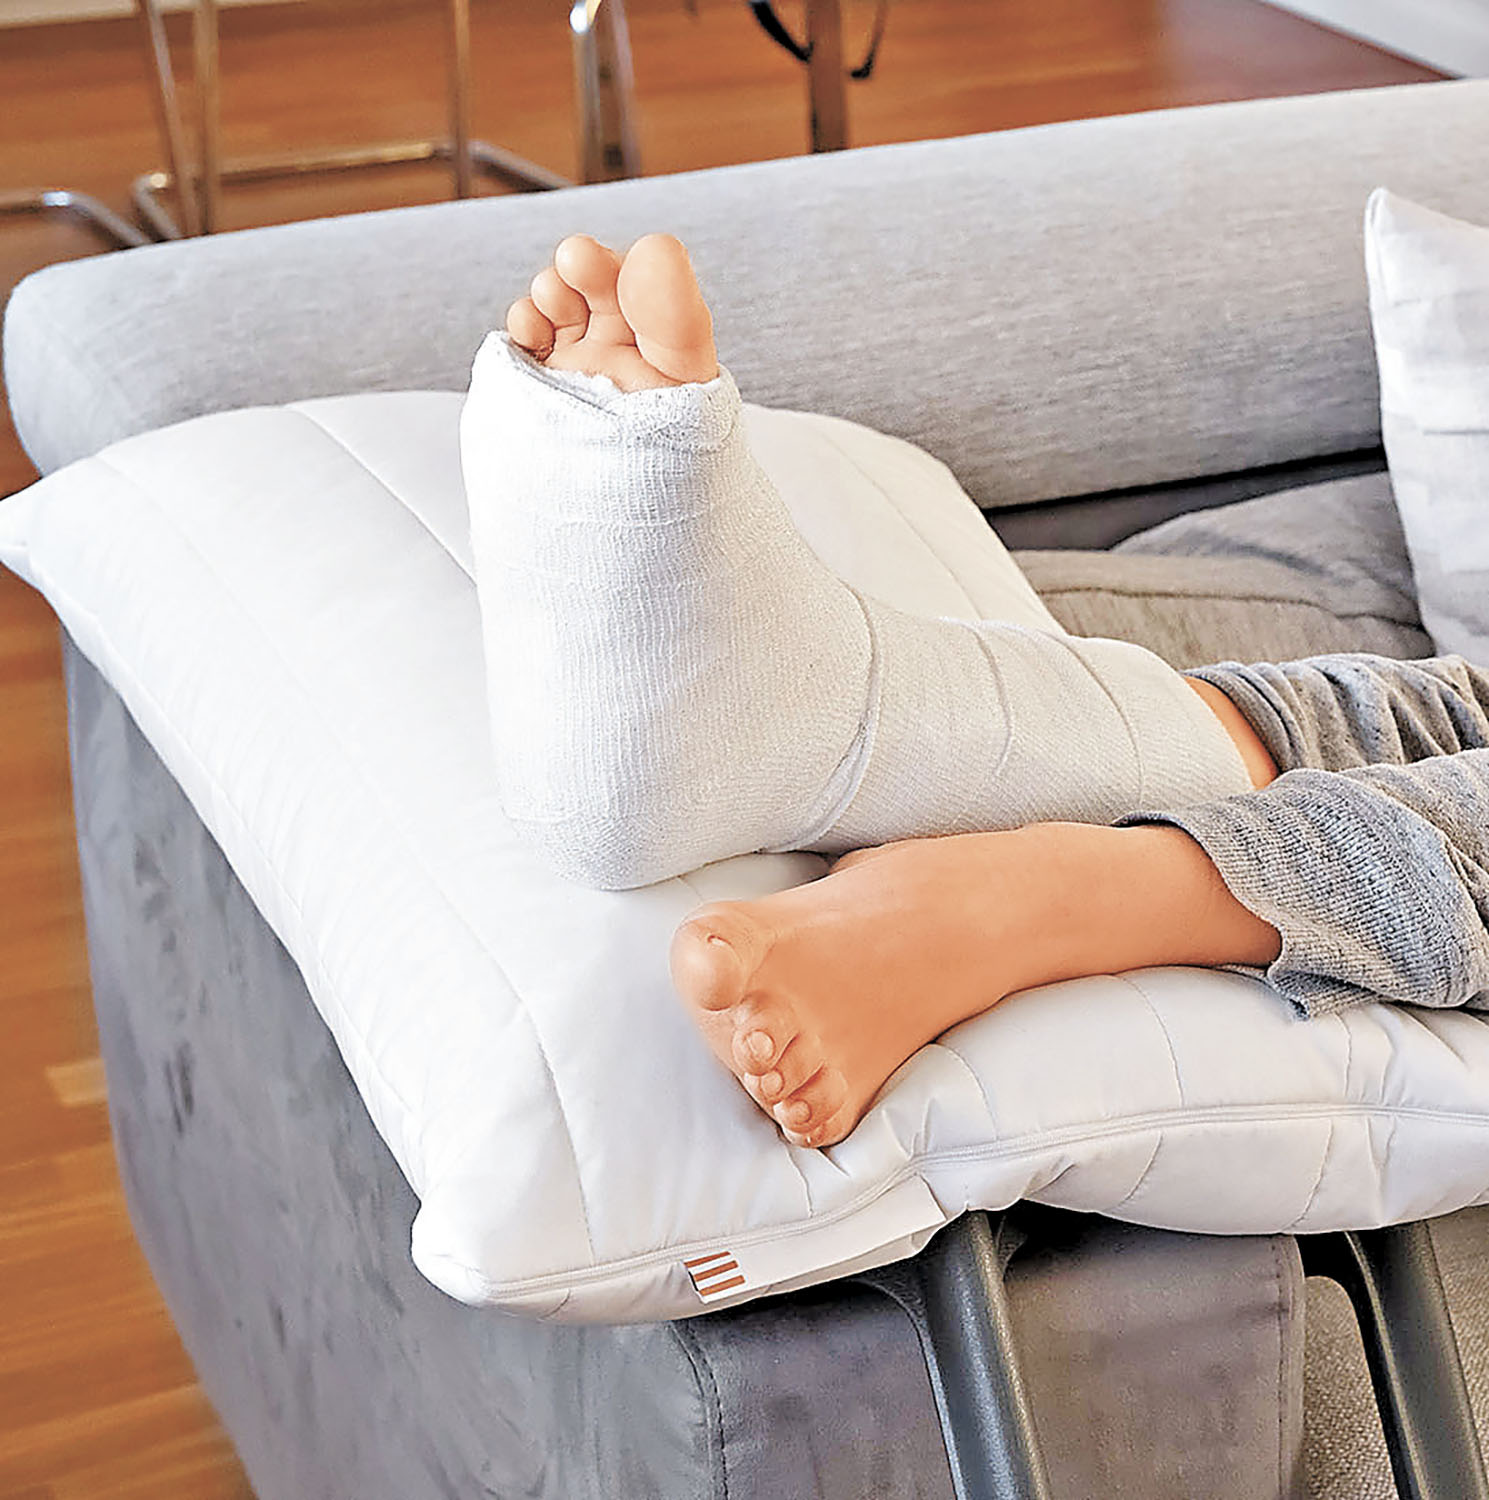 ■用枕頭抬高踝關節，利用重力與淋巴系統的引流來消腫。